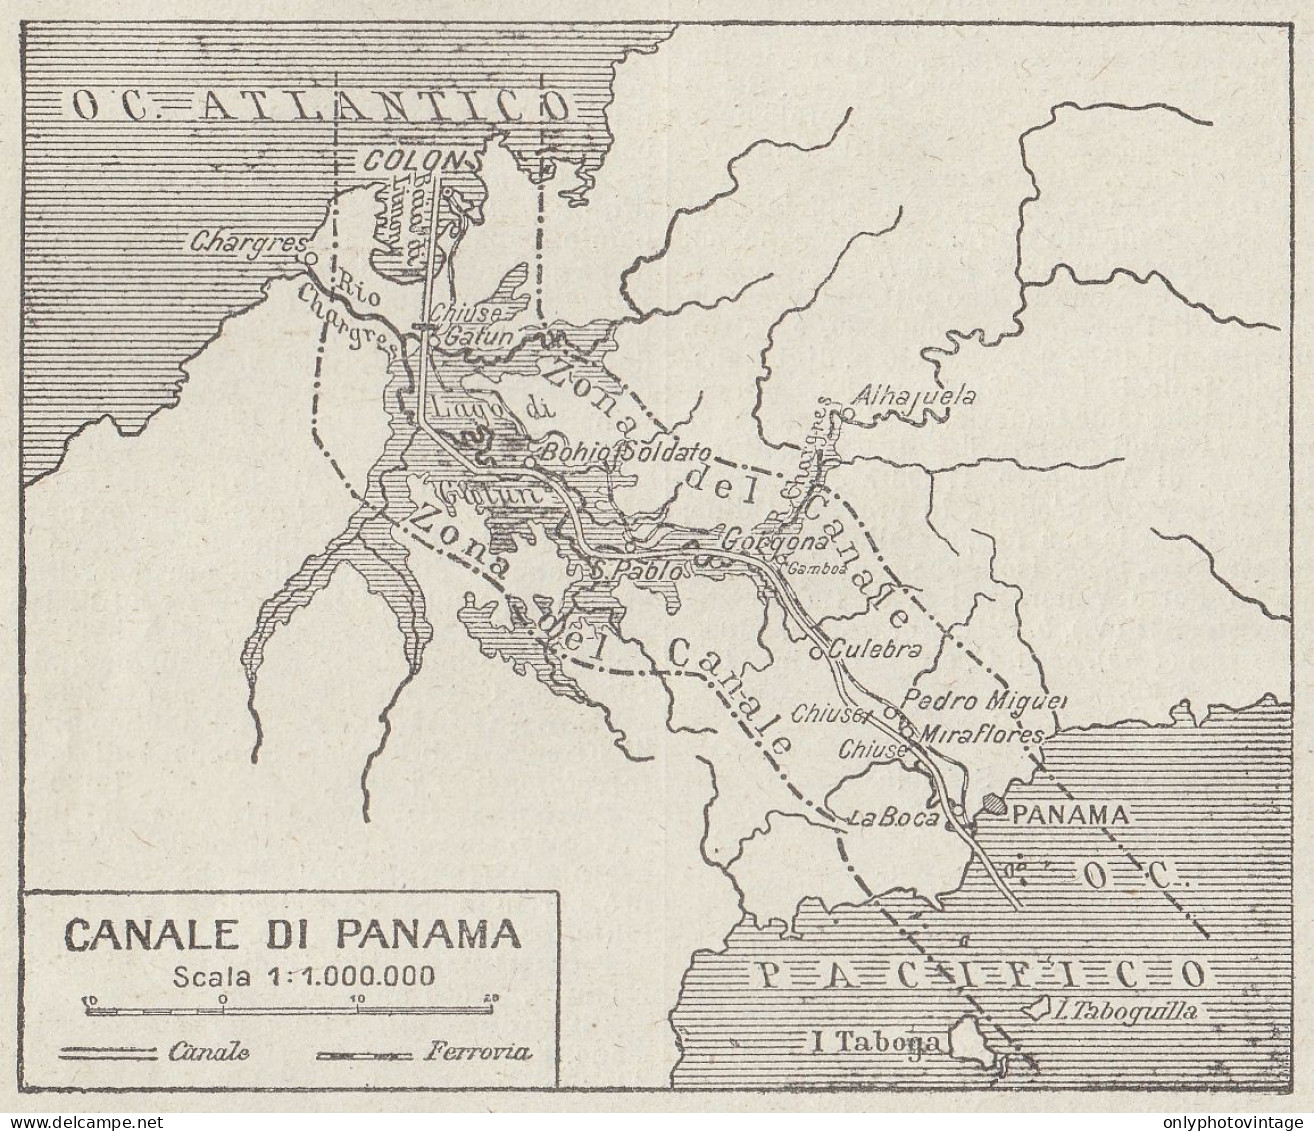 Canale Di Panama - Carta Geografica D'epoca - 1936 Vintage Map - Cartes Géographiques